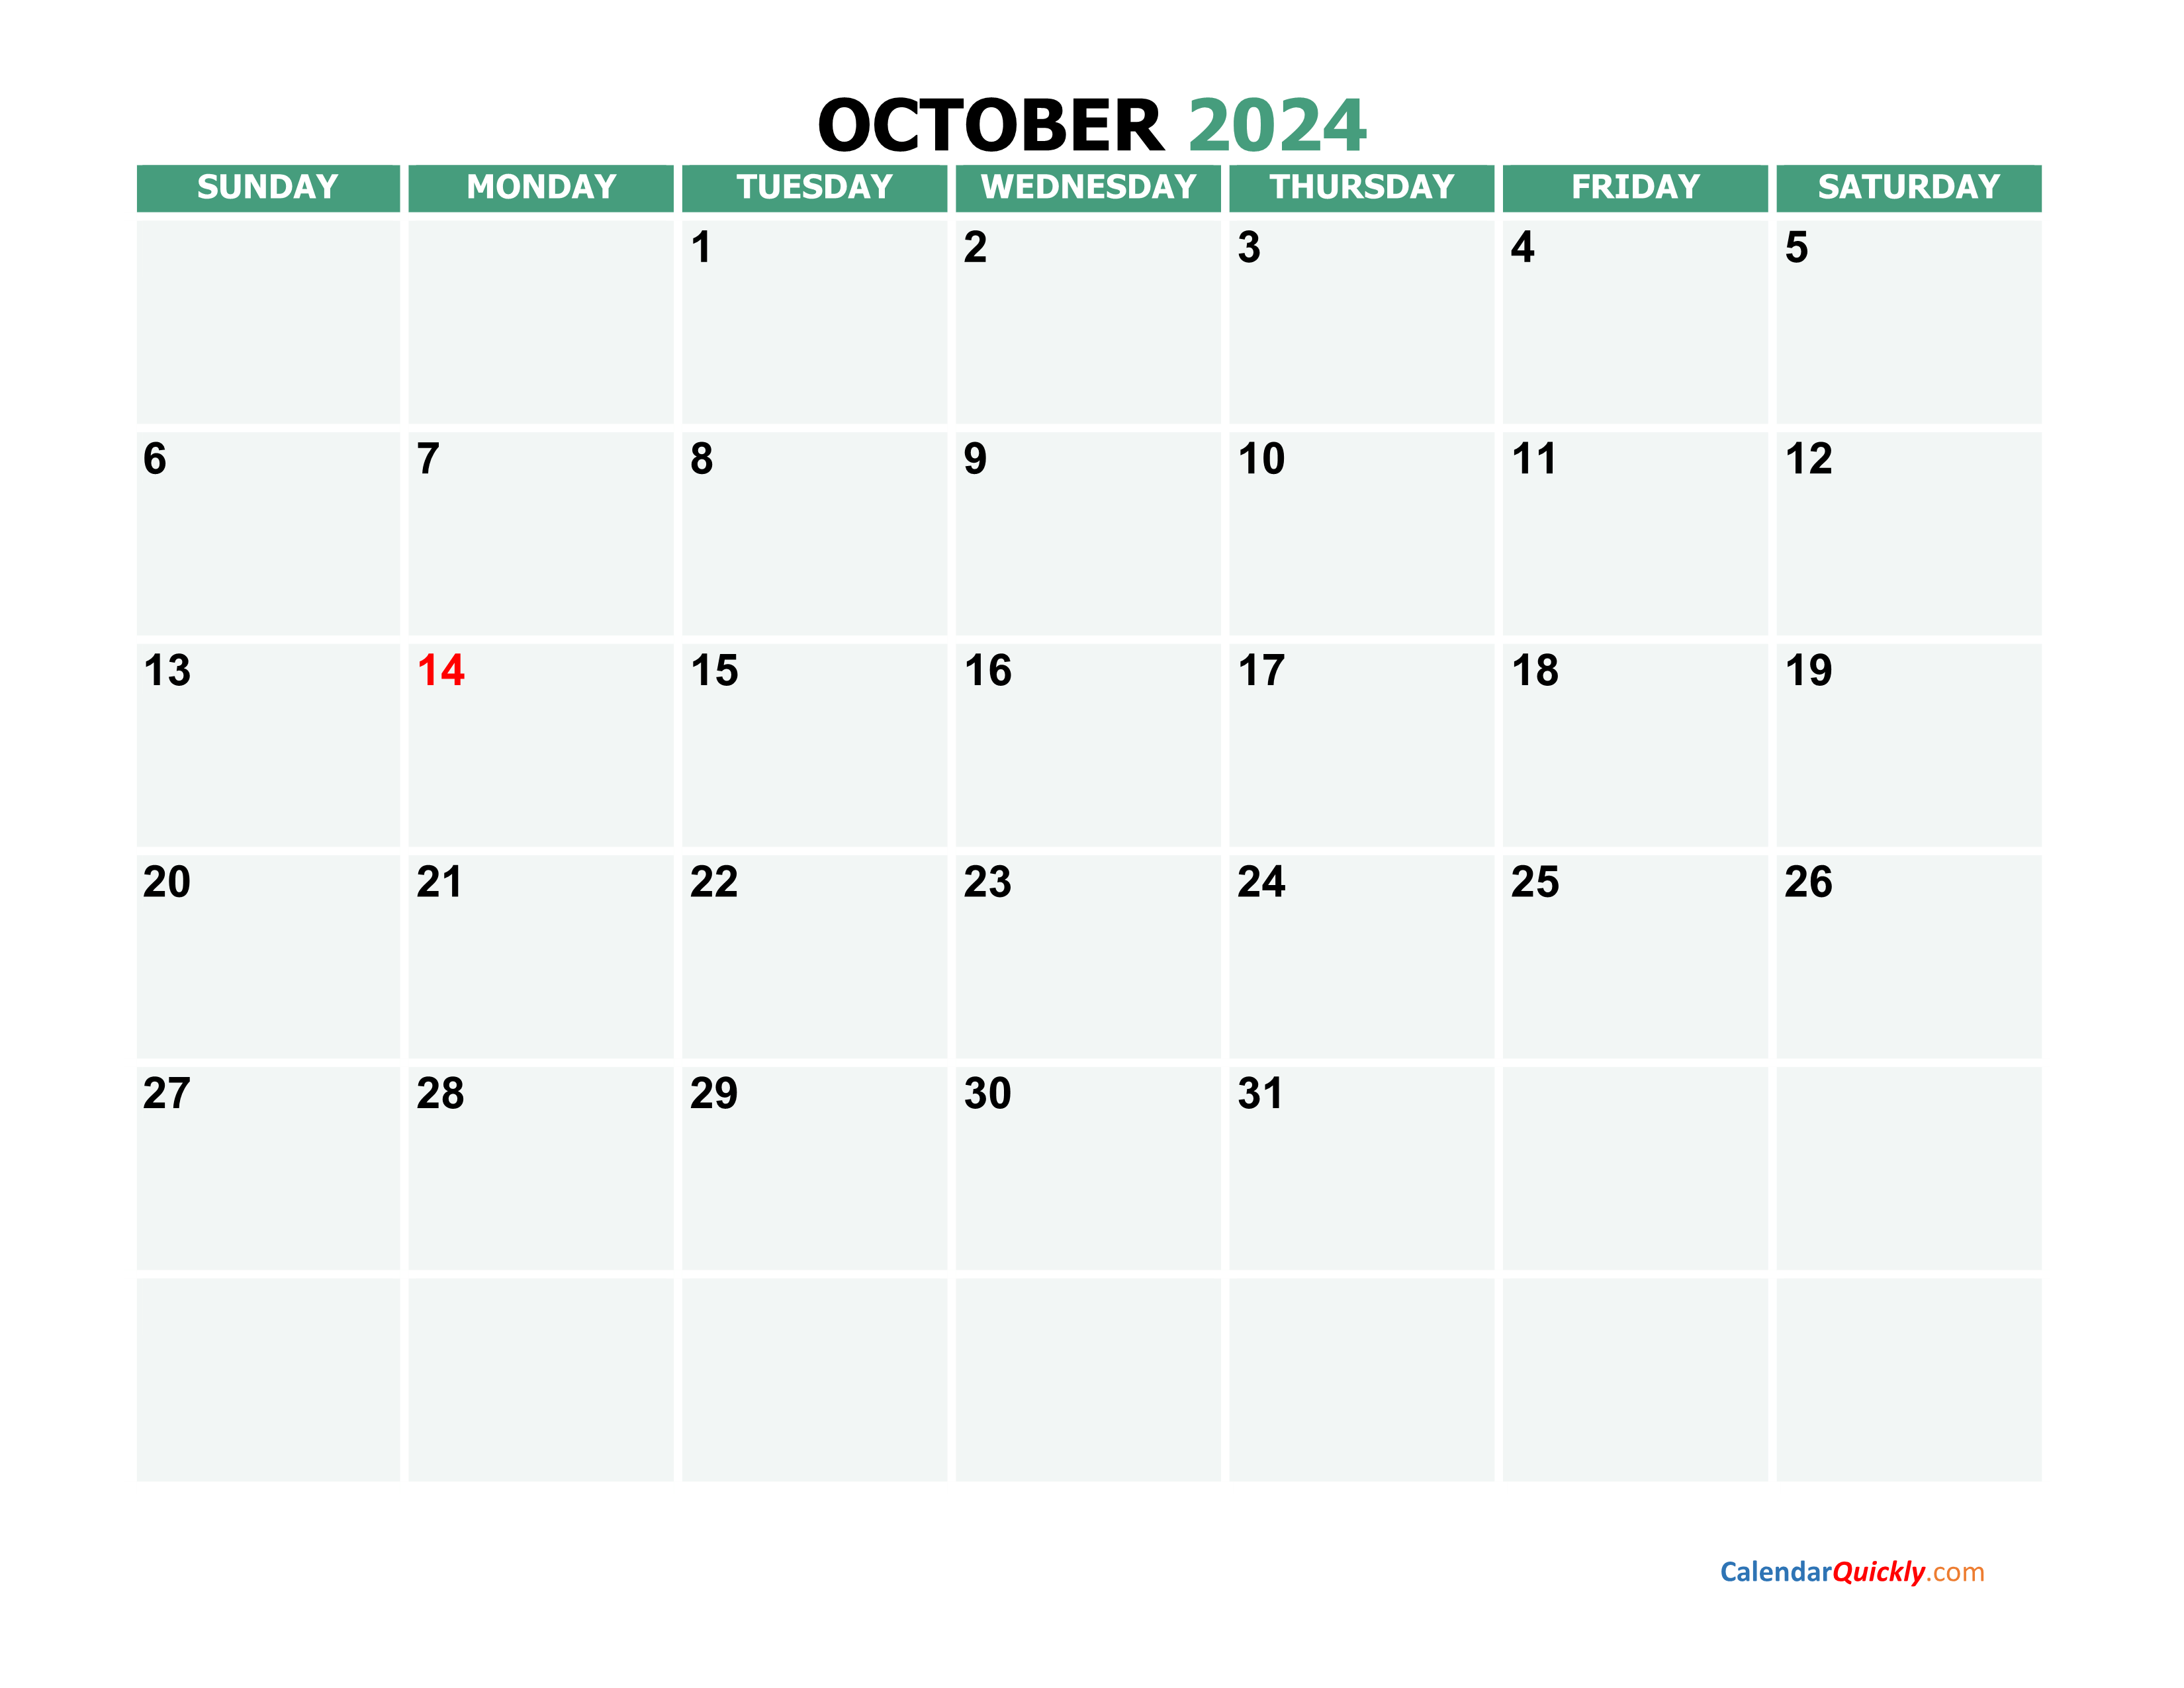 October 2024 Calendars | Calendar Quickly